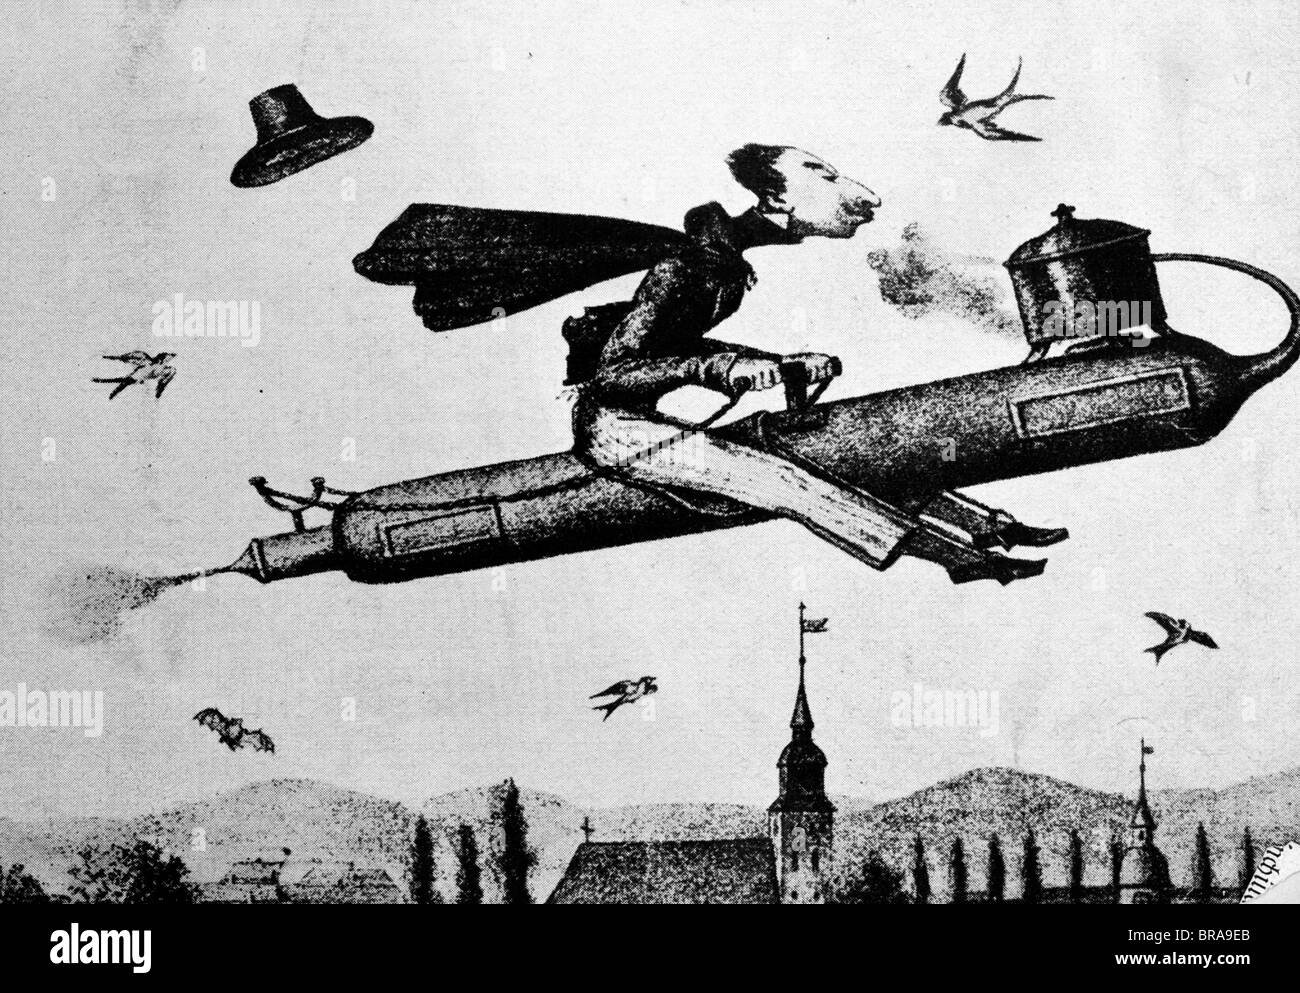 1800 ilustración del hombre montando un cohete DE VAPOR EN EL CIELO Foto de stock